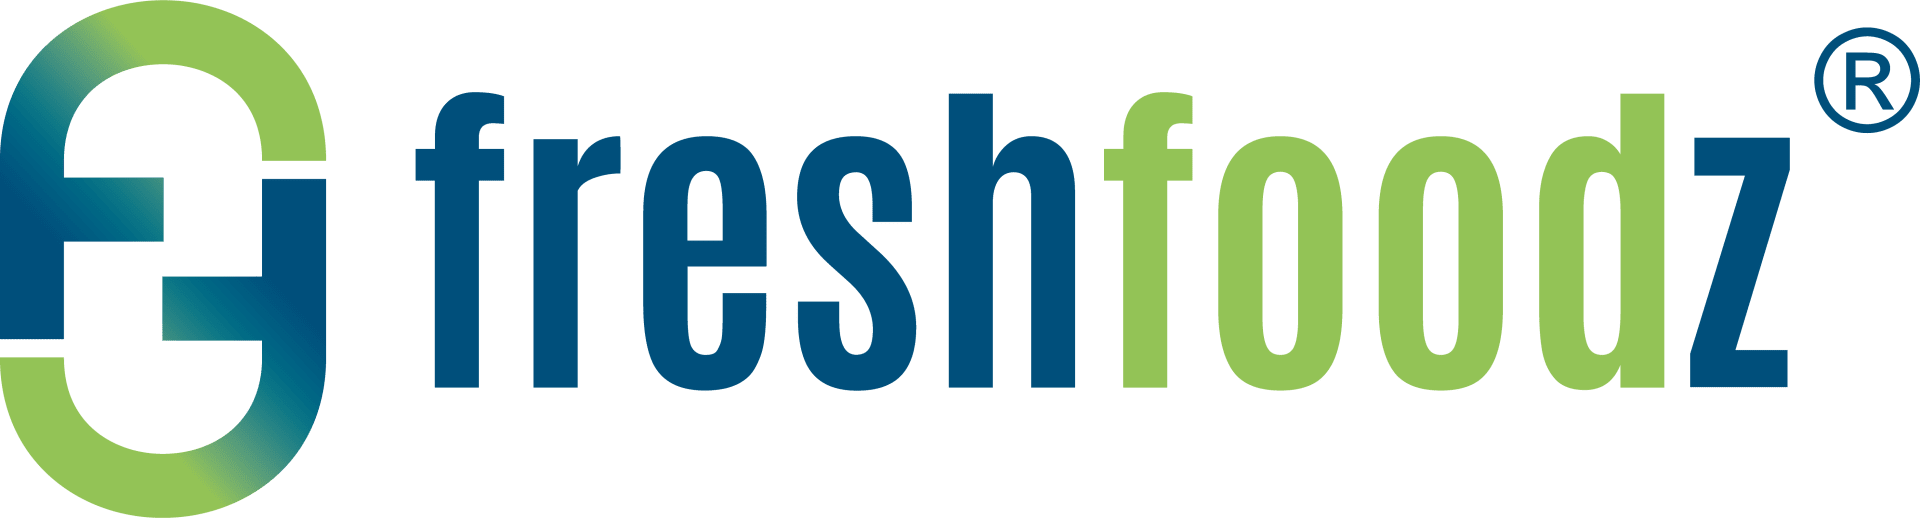 Freshfoodz GmbH logo